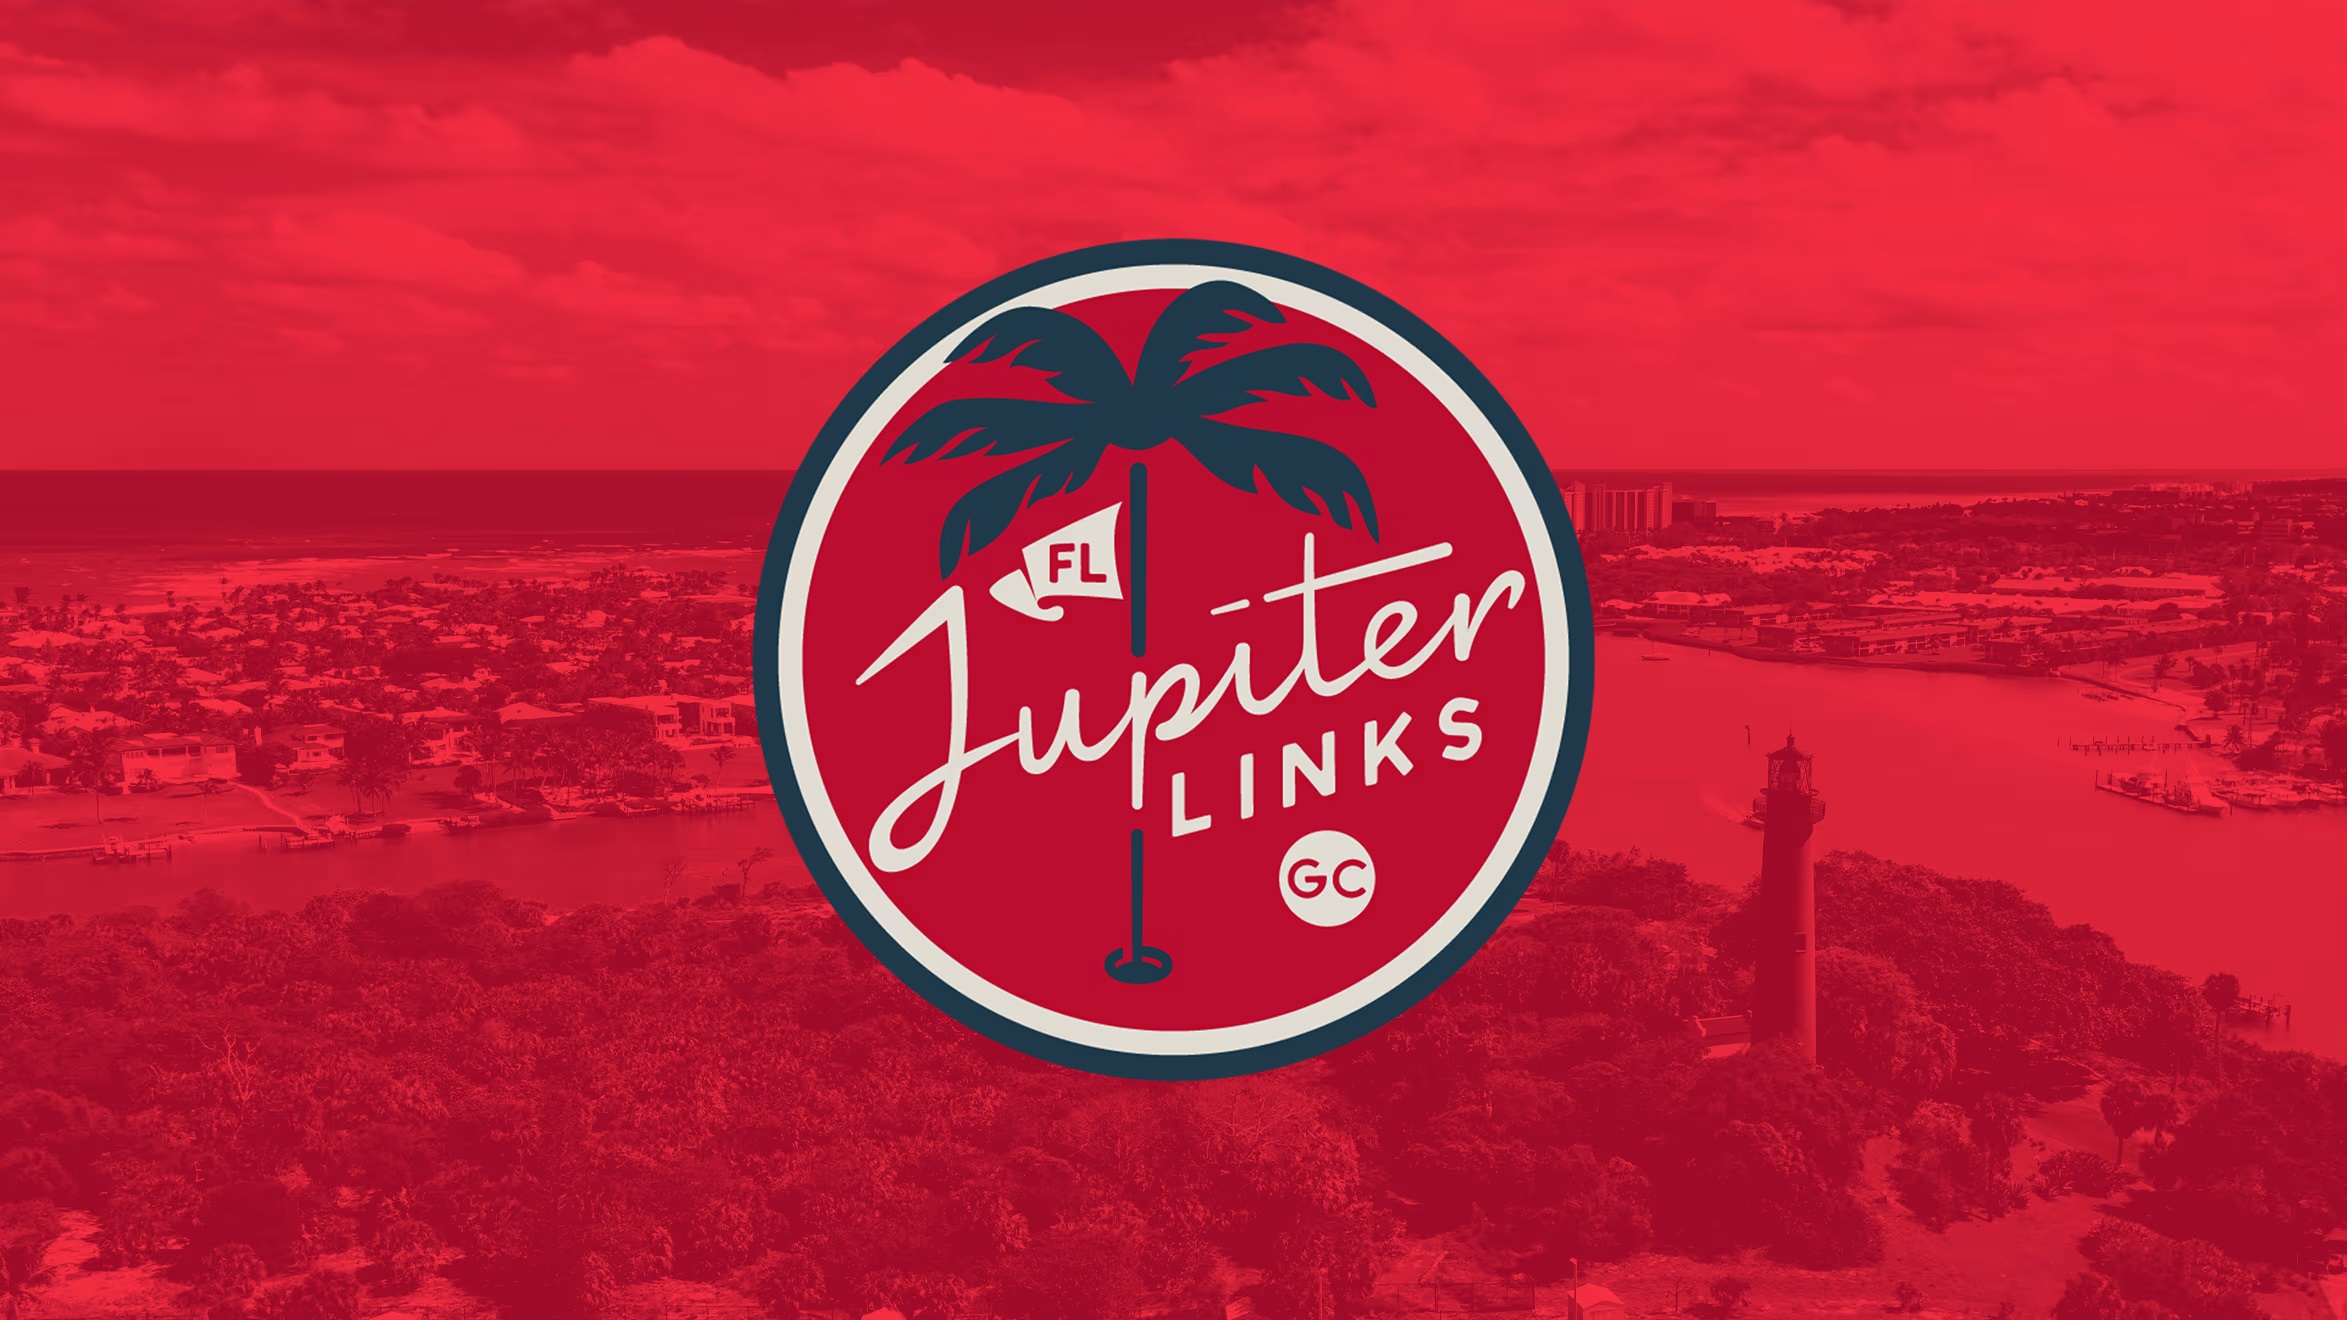 Jupiter Links logo